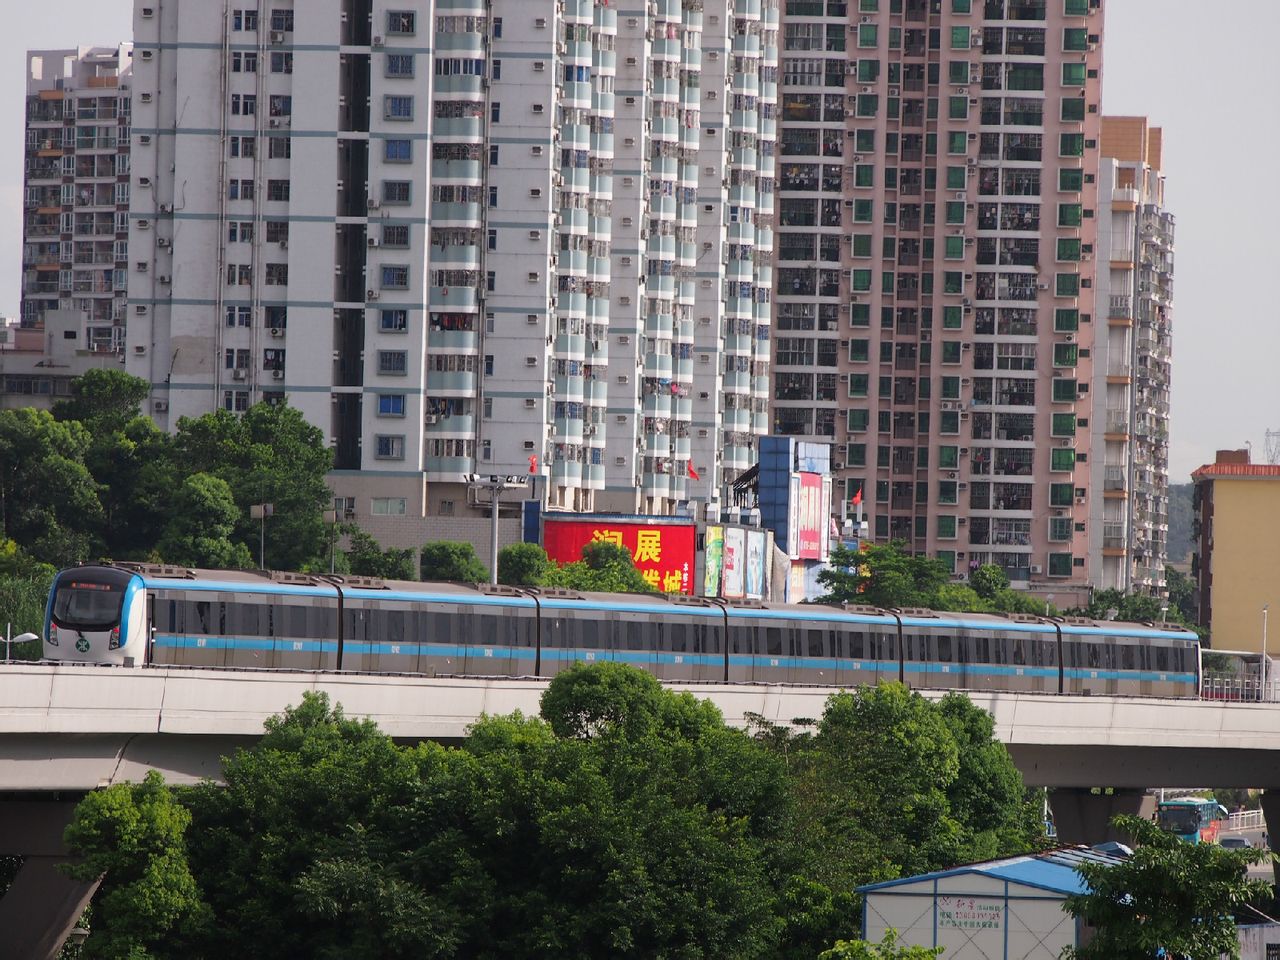 深圳市捷運三號線投資有限公司